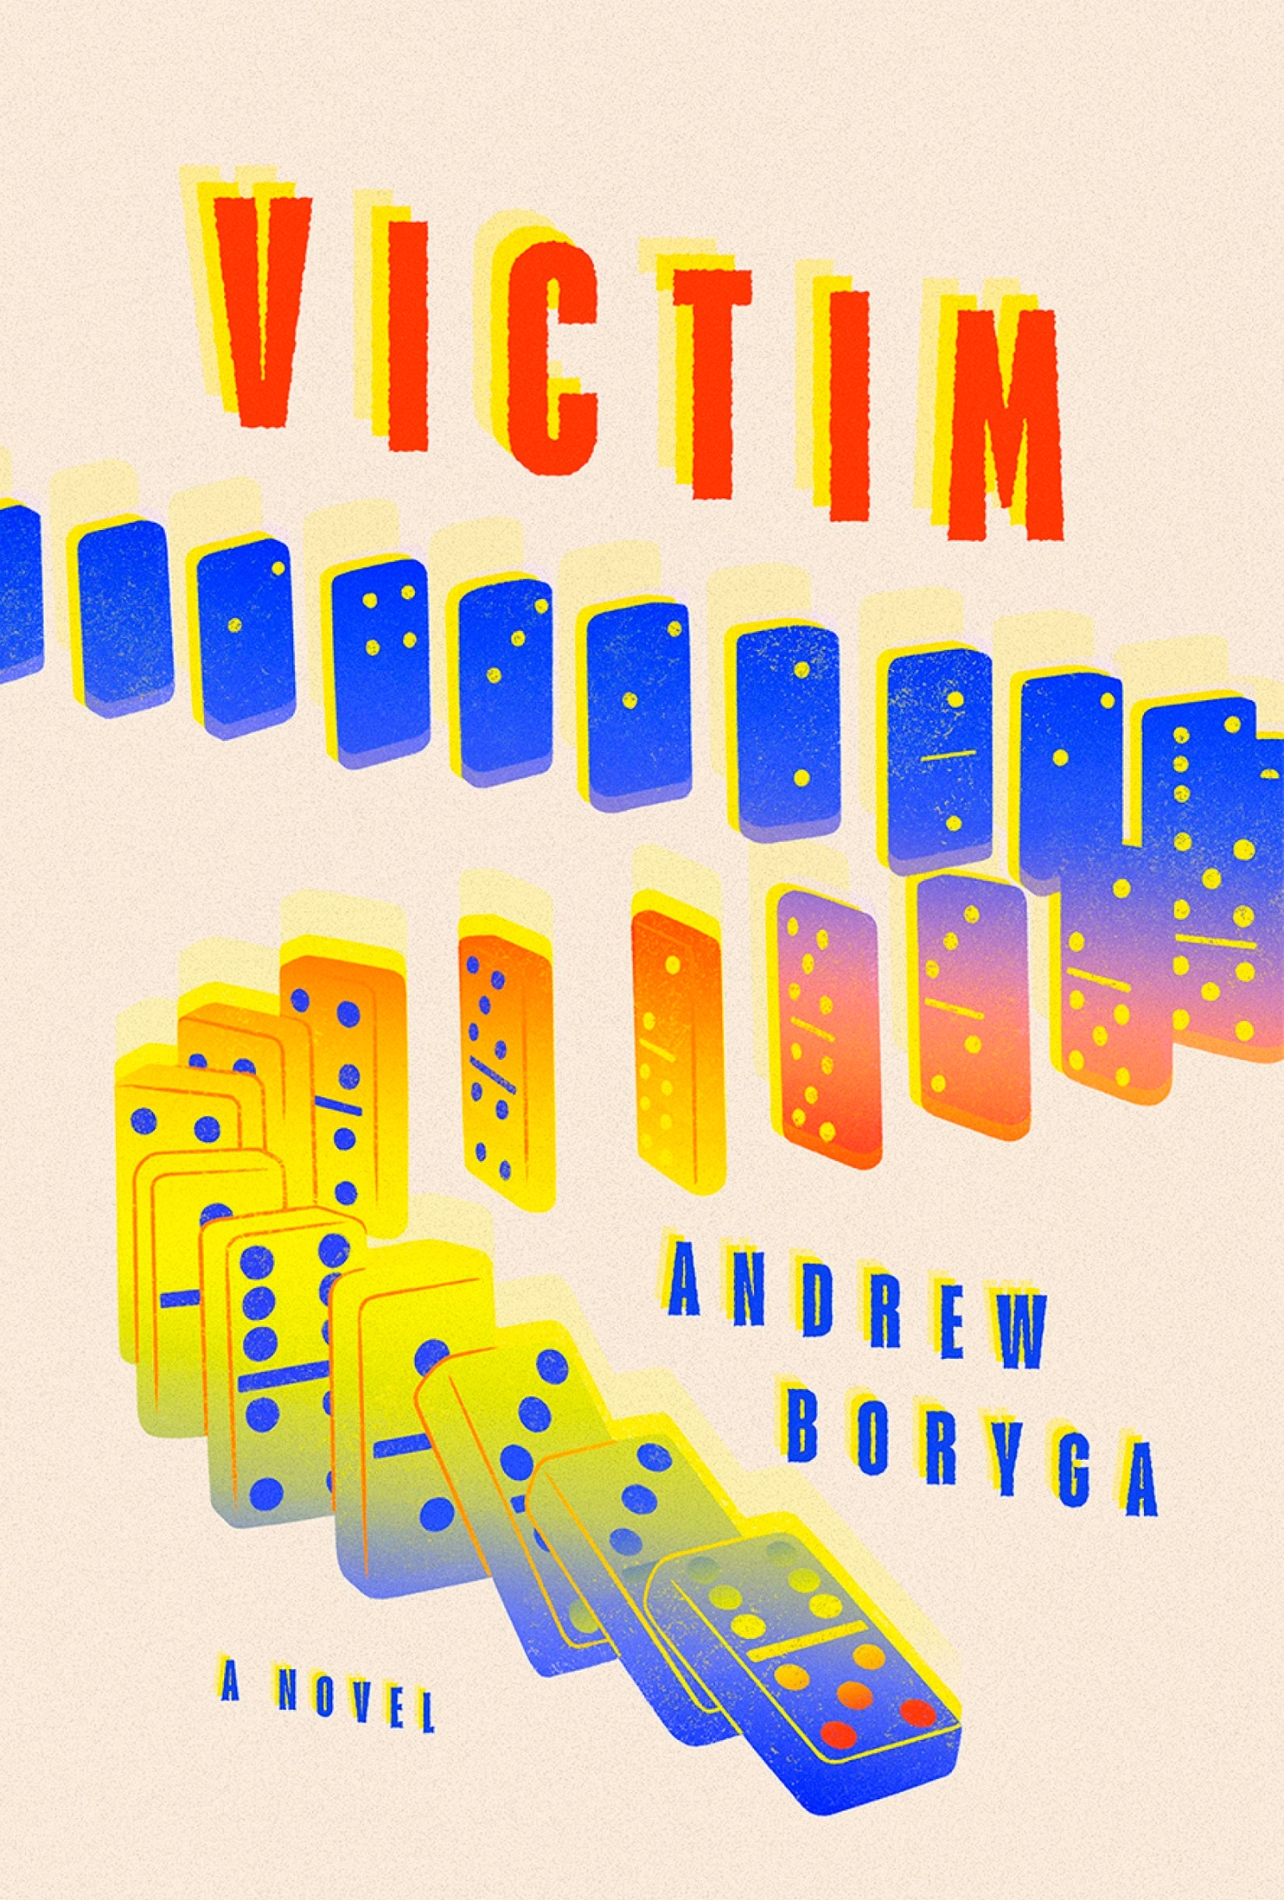 “Victim” by Andrew Boryga (Doubleday)